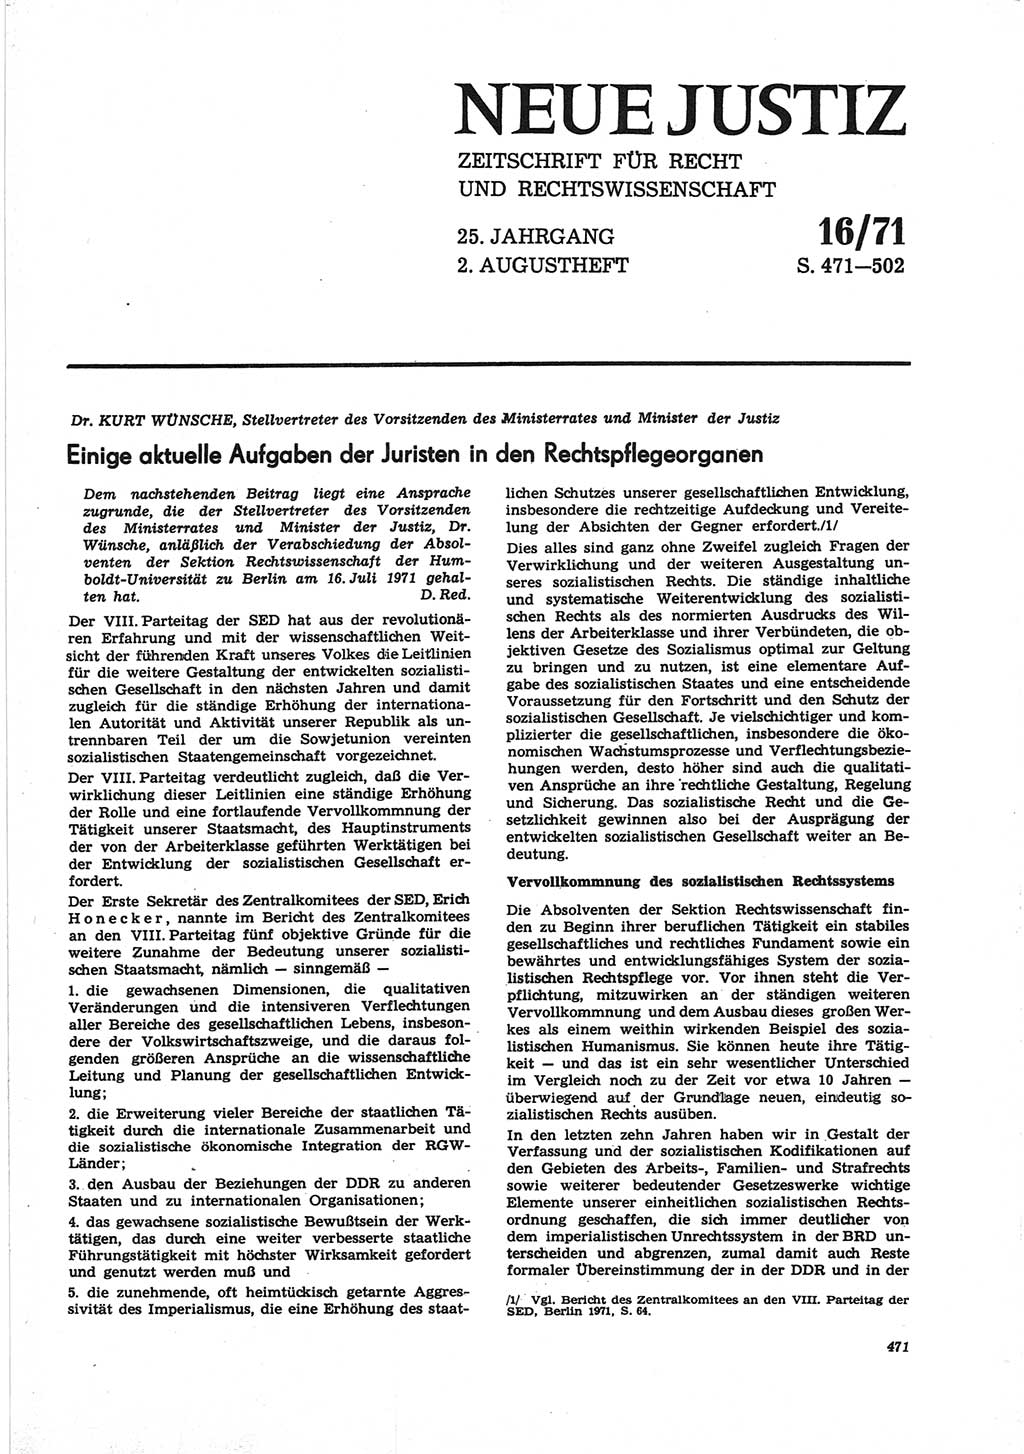 Neue Justiz (NJ), Zeitschrift für Recht und Rechtswissenschaft [Deutsche Demokratische Republik (DDR)], 25. Jahrgang 1971, Seite 471 (NJ DDR 1971, S. 471)